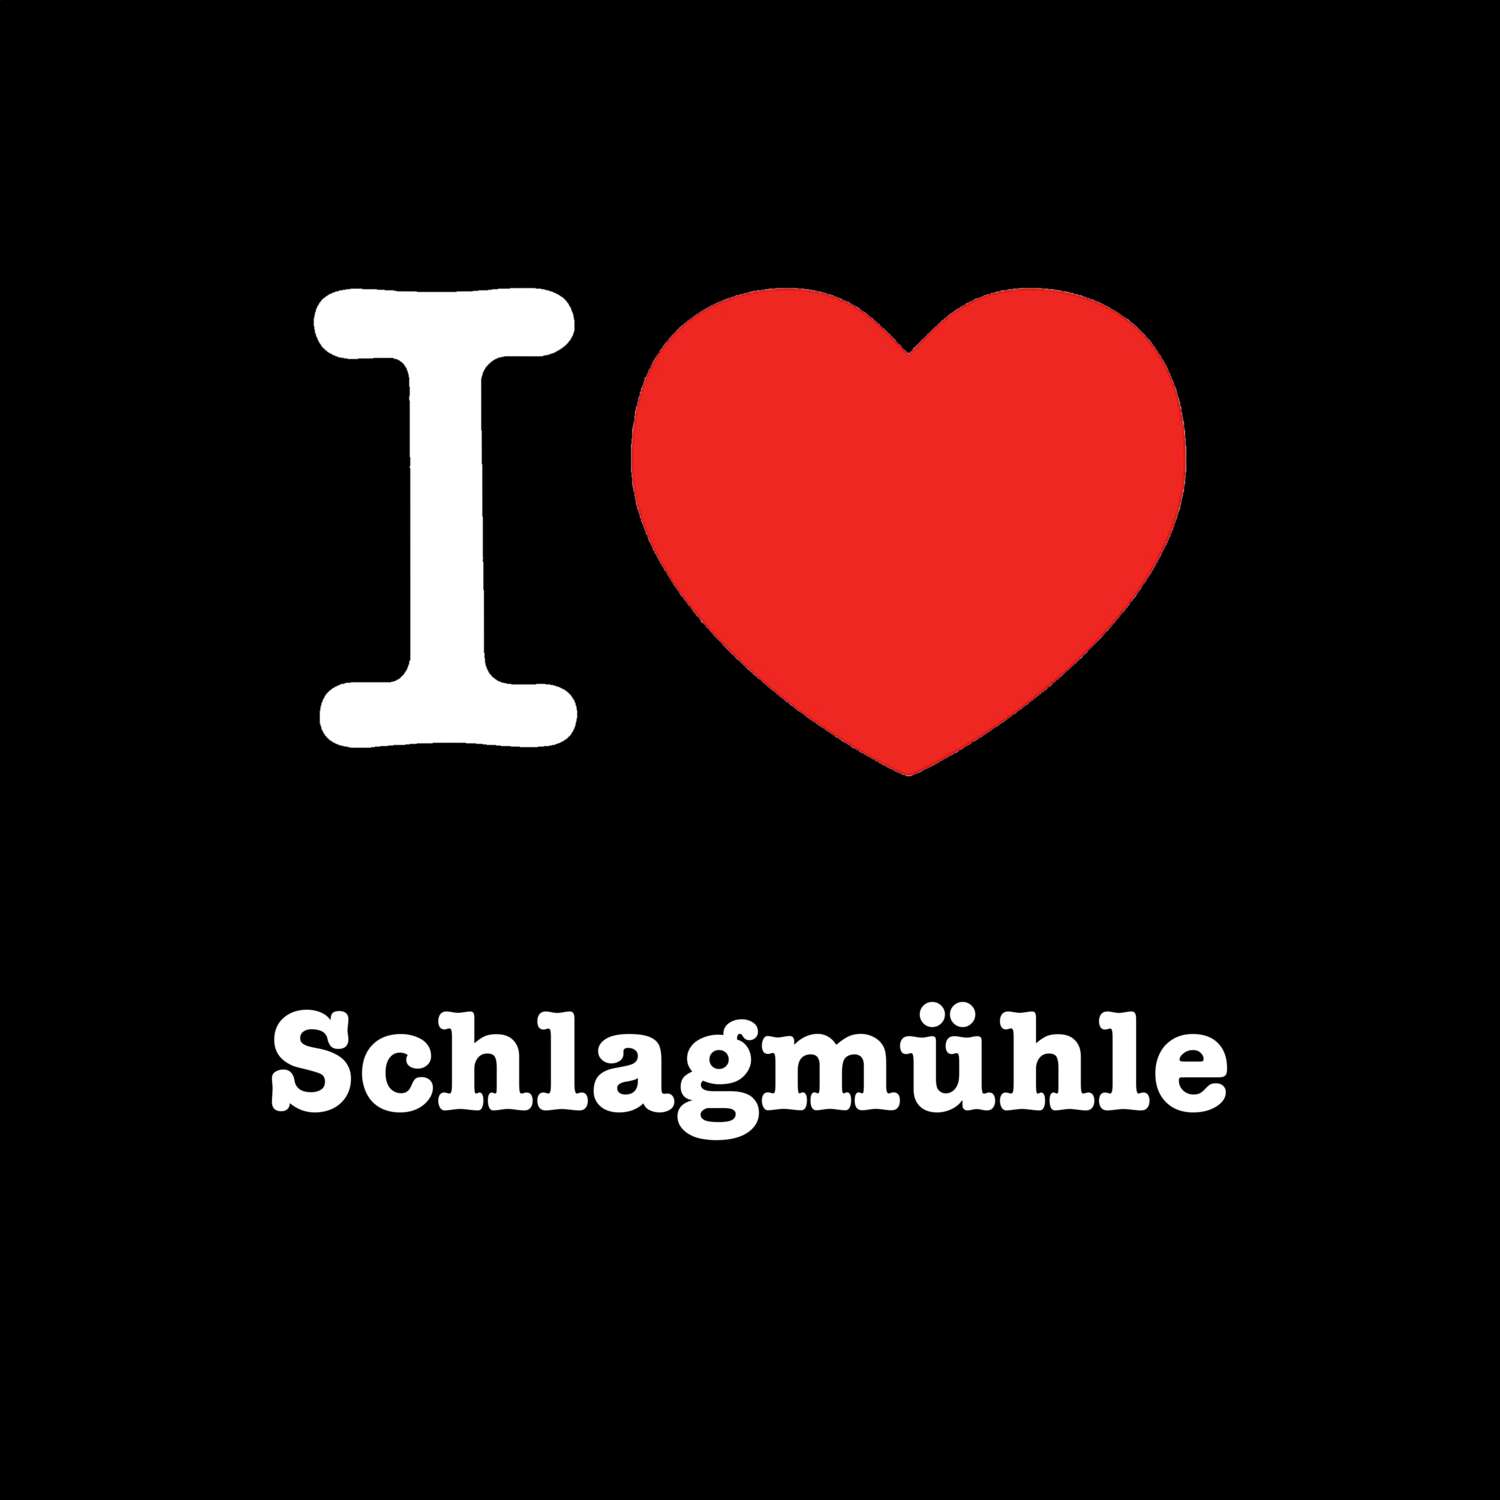 Schlagmühle T-Shirt »I love«